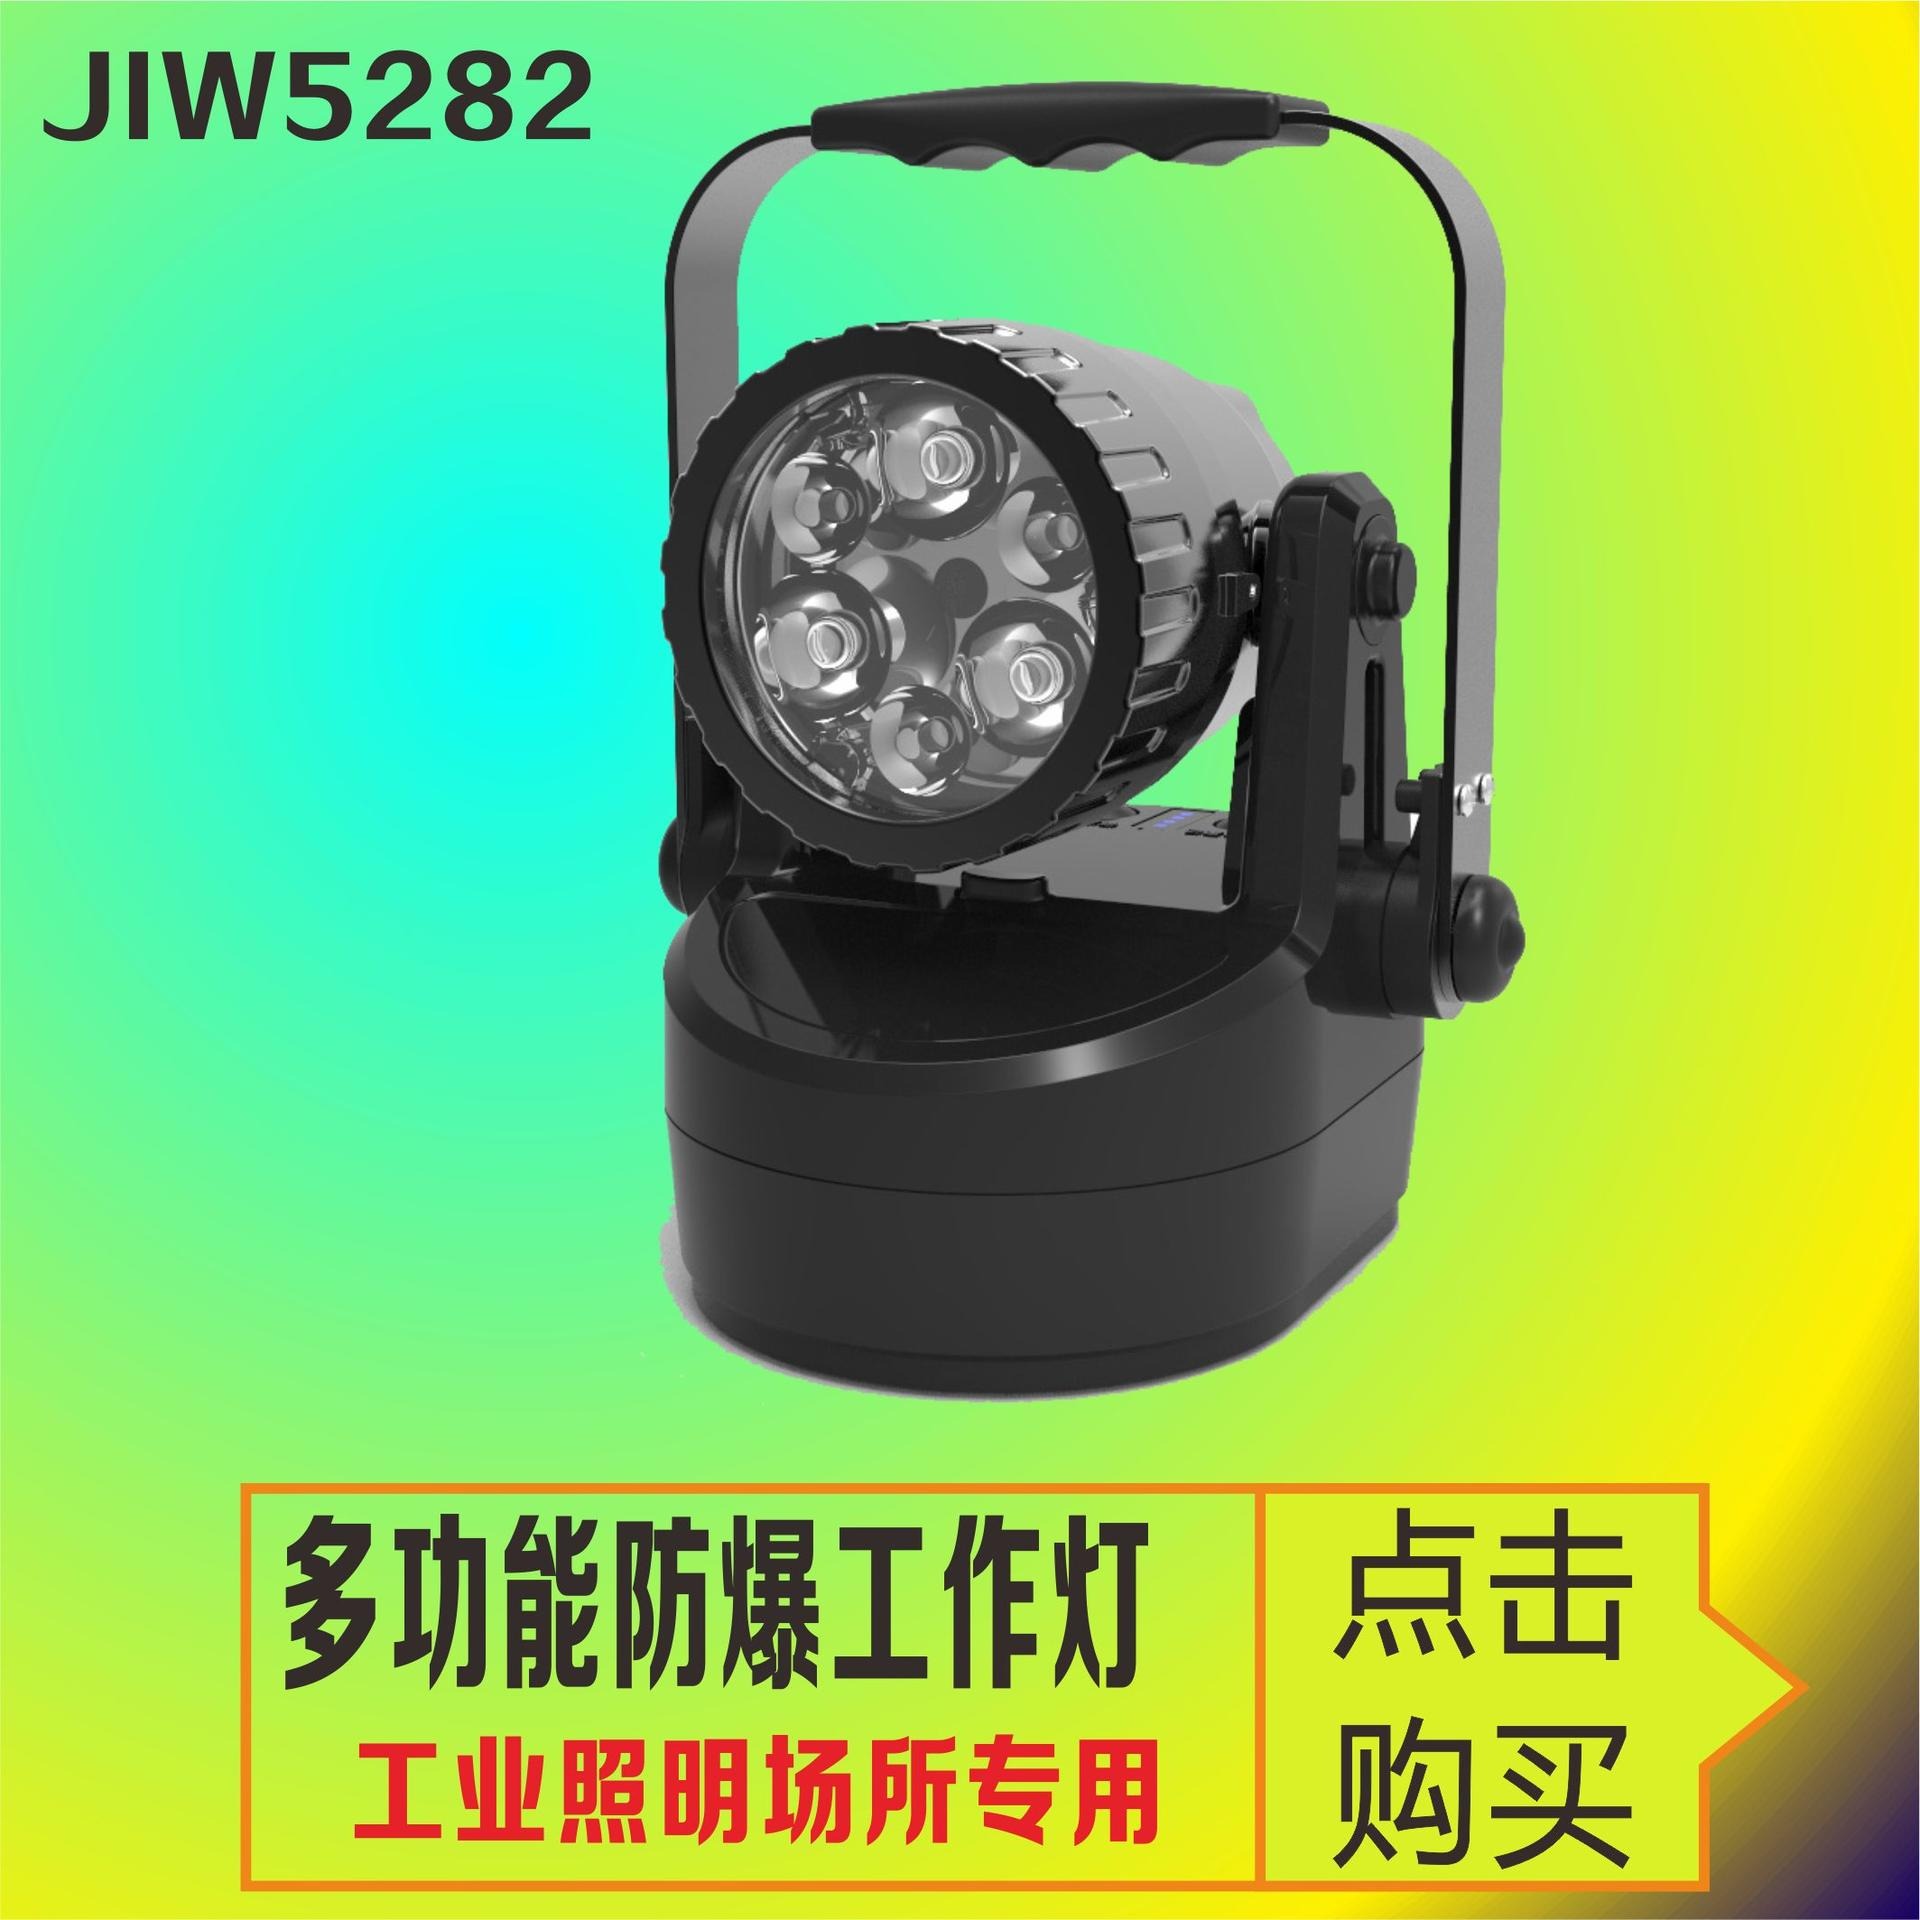 洲创电气巡检聚泛光可调信号灯 JIW5282多功能强光工作灯 大功率LED手提式防爆探照灯 巡视检修防爆手电筒图片